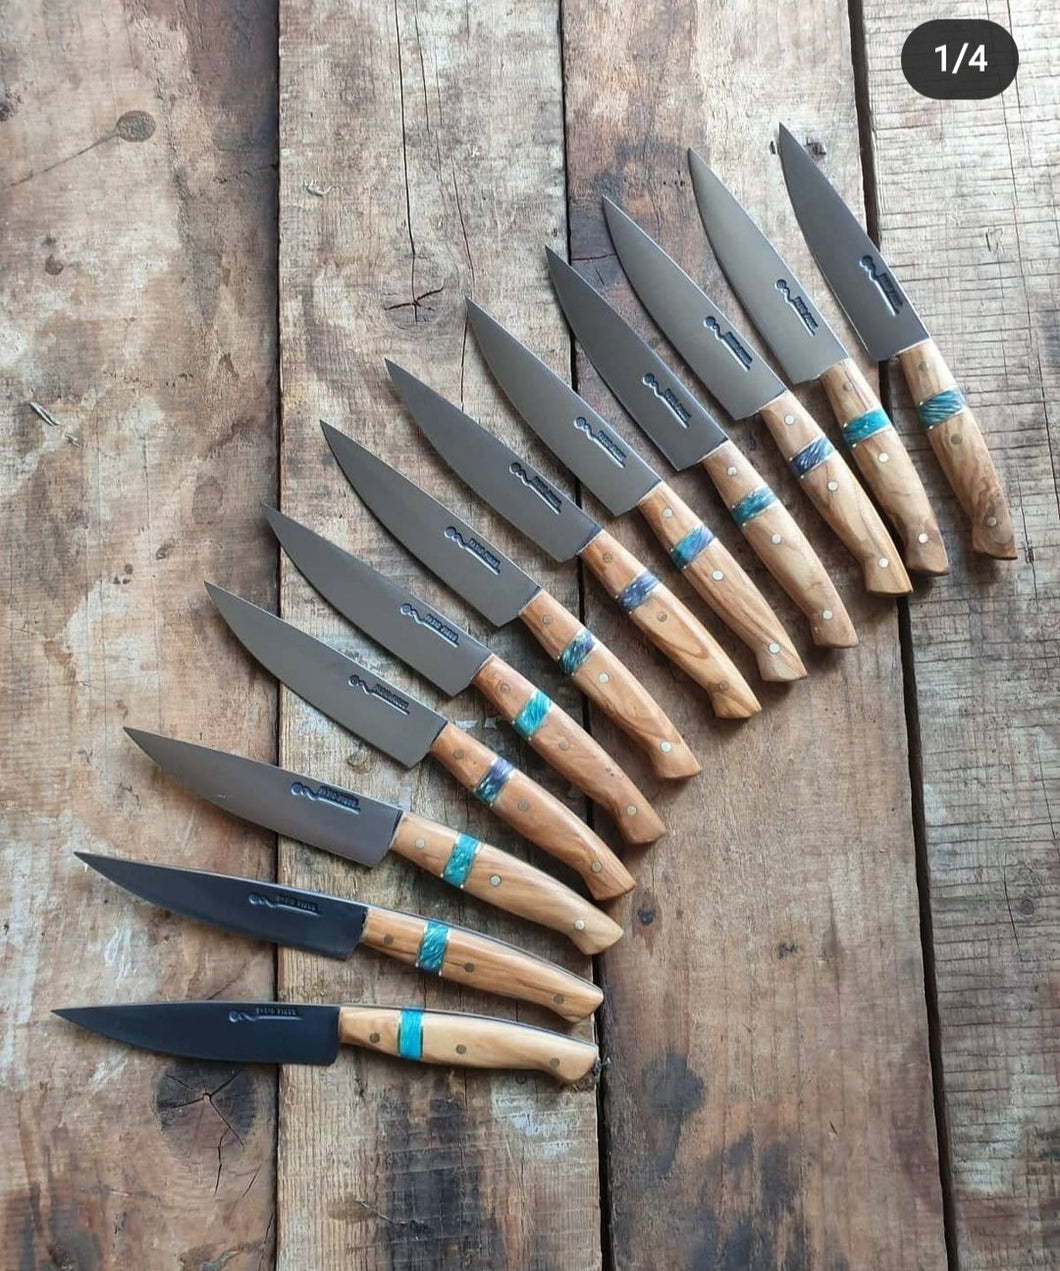 12 steak knives